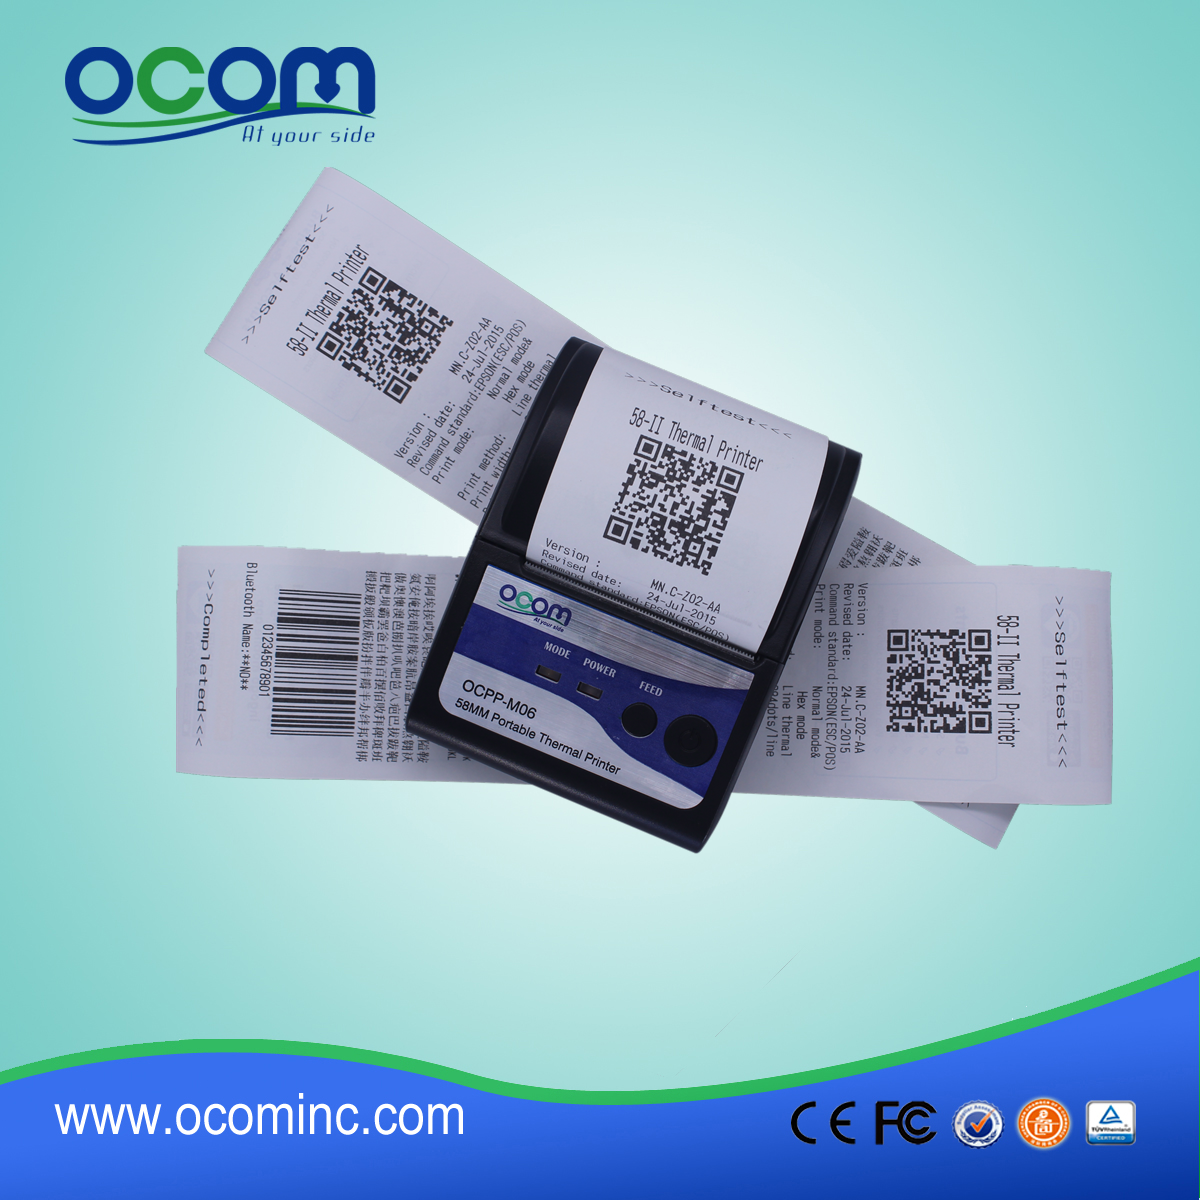 (OCPP-М06) OCOM горячие продажи низкая стоимость android принтер pos-принтер